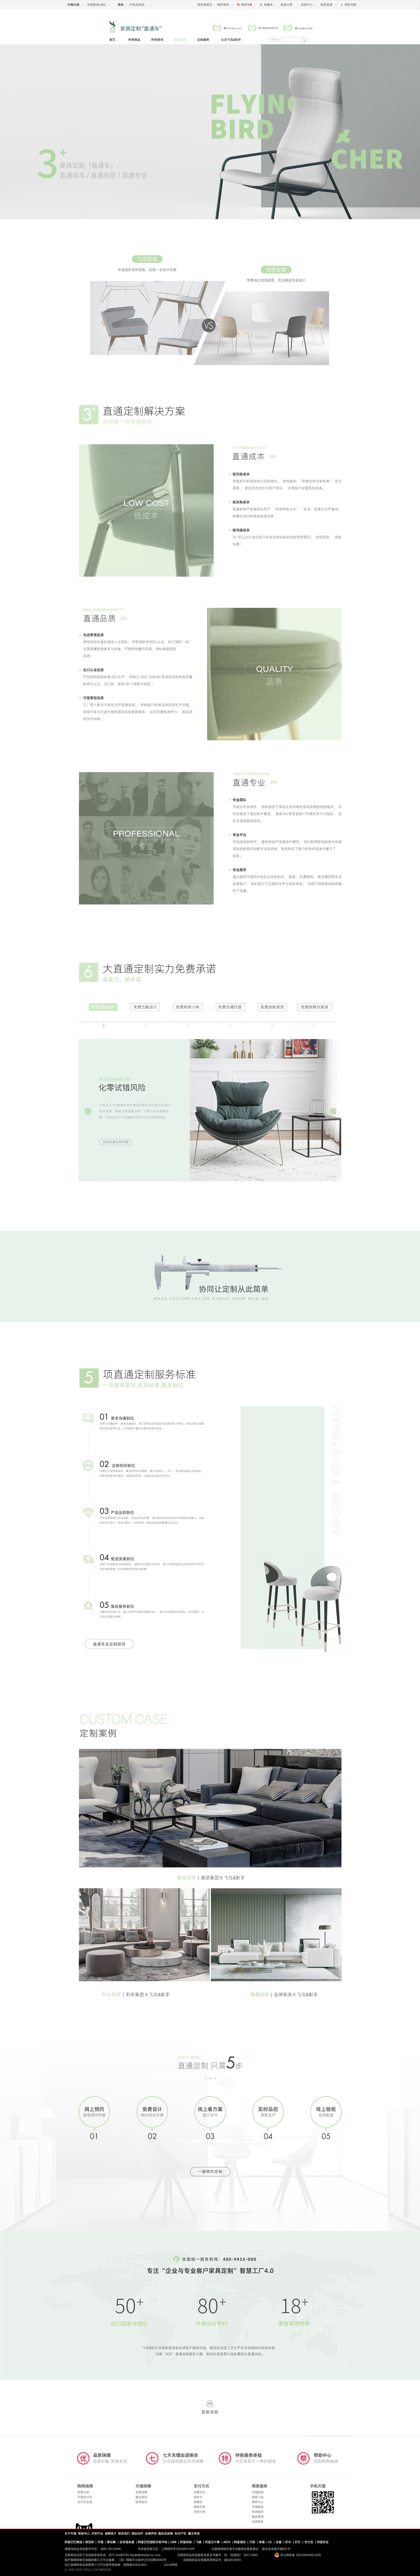 家具電商網站設計-飛鳥射手家具